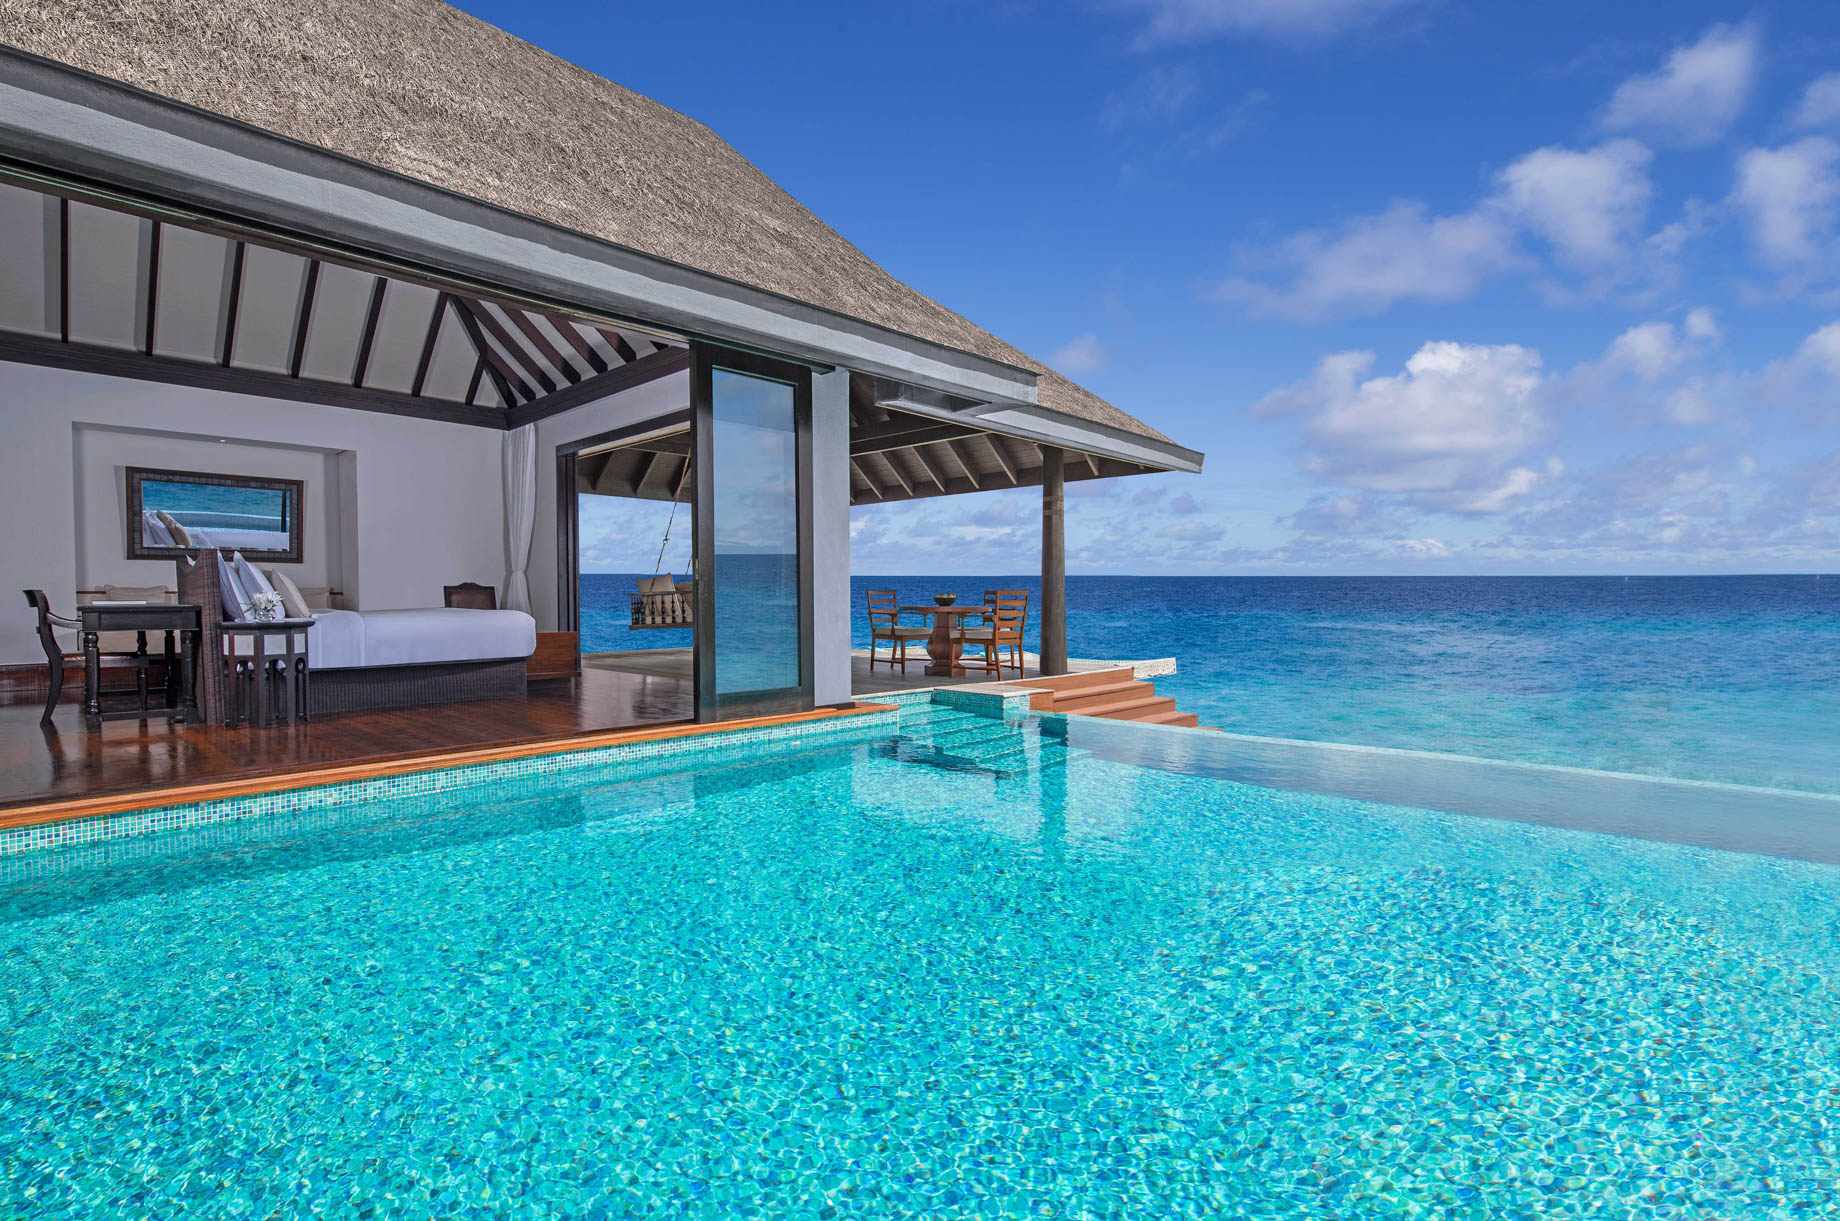 Anantara Kihavah Maldives Villas Resort – Baa Atoll, Maldives – Over Water Pool Villa Ocean View